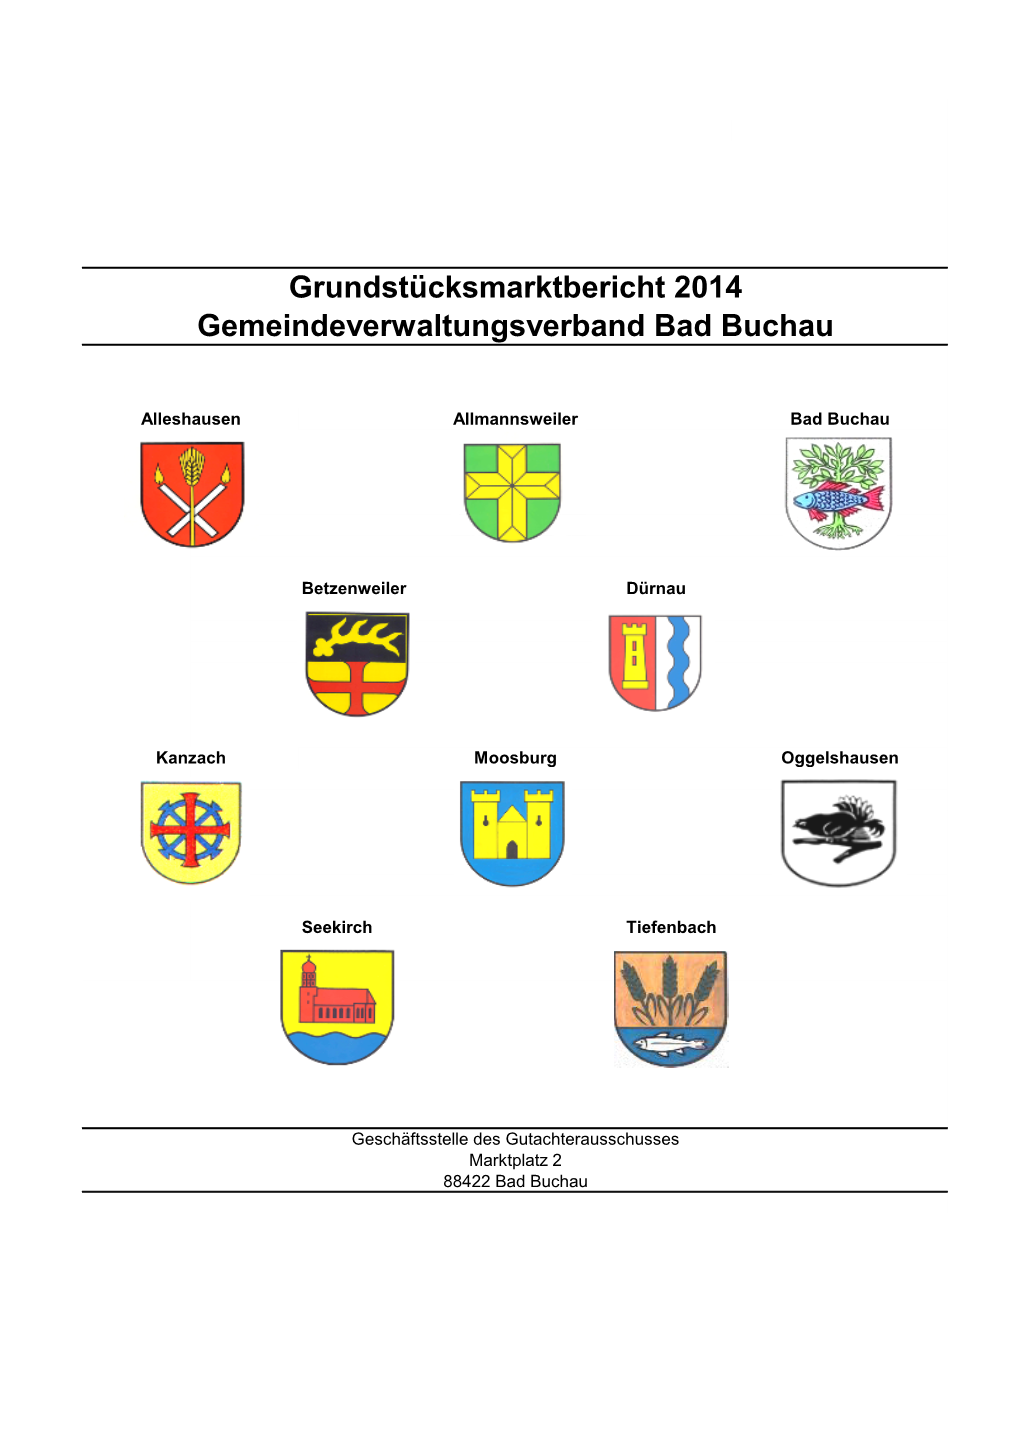 Grundstücksmarktbericht 2014 Gemeindeverwaltungsverband Bad Buchau